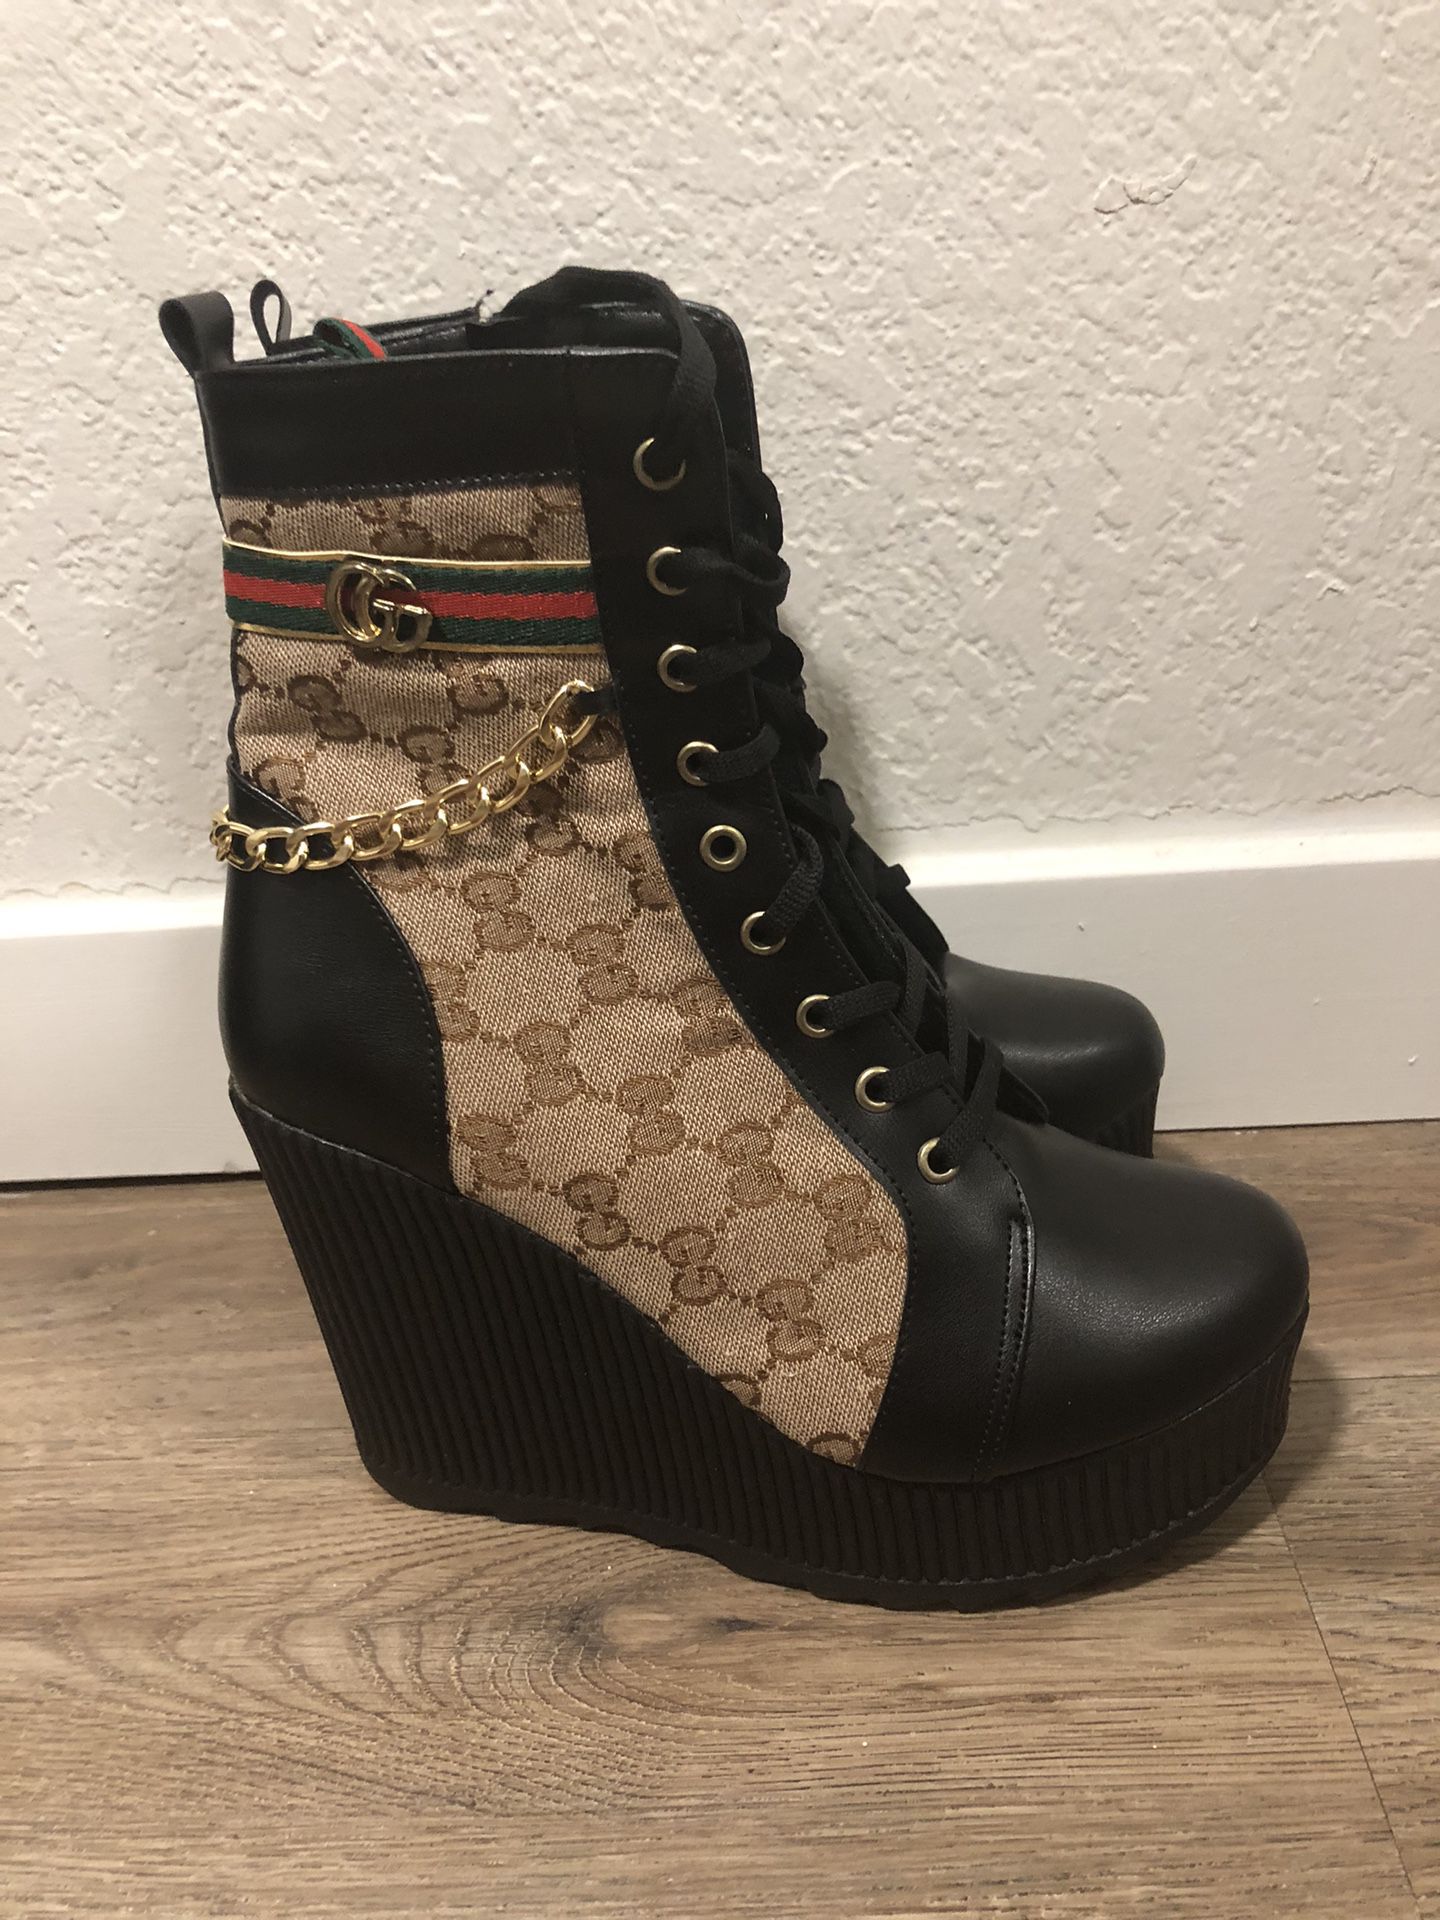 Women’s Boots/heels Size 9